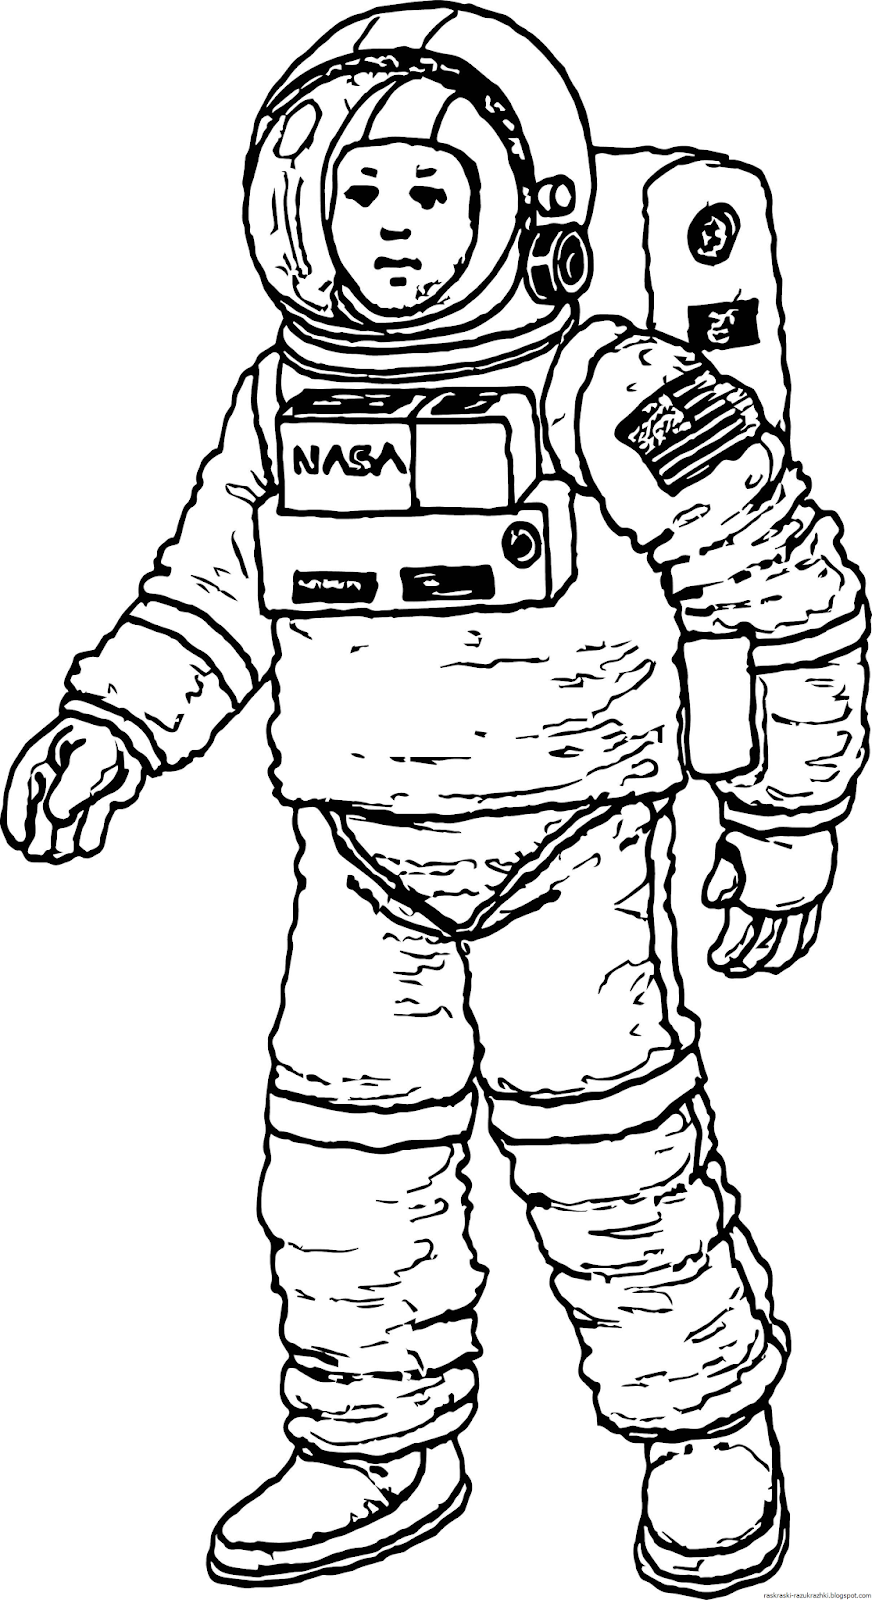 Космонавт раскраска для детей. Раскраска про космос и Космонавтов для детей. Космонавт рисунок. Рисунок Космонавта в скафандре для детей. Скафандр раскраска